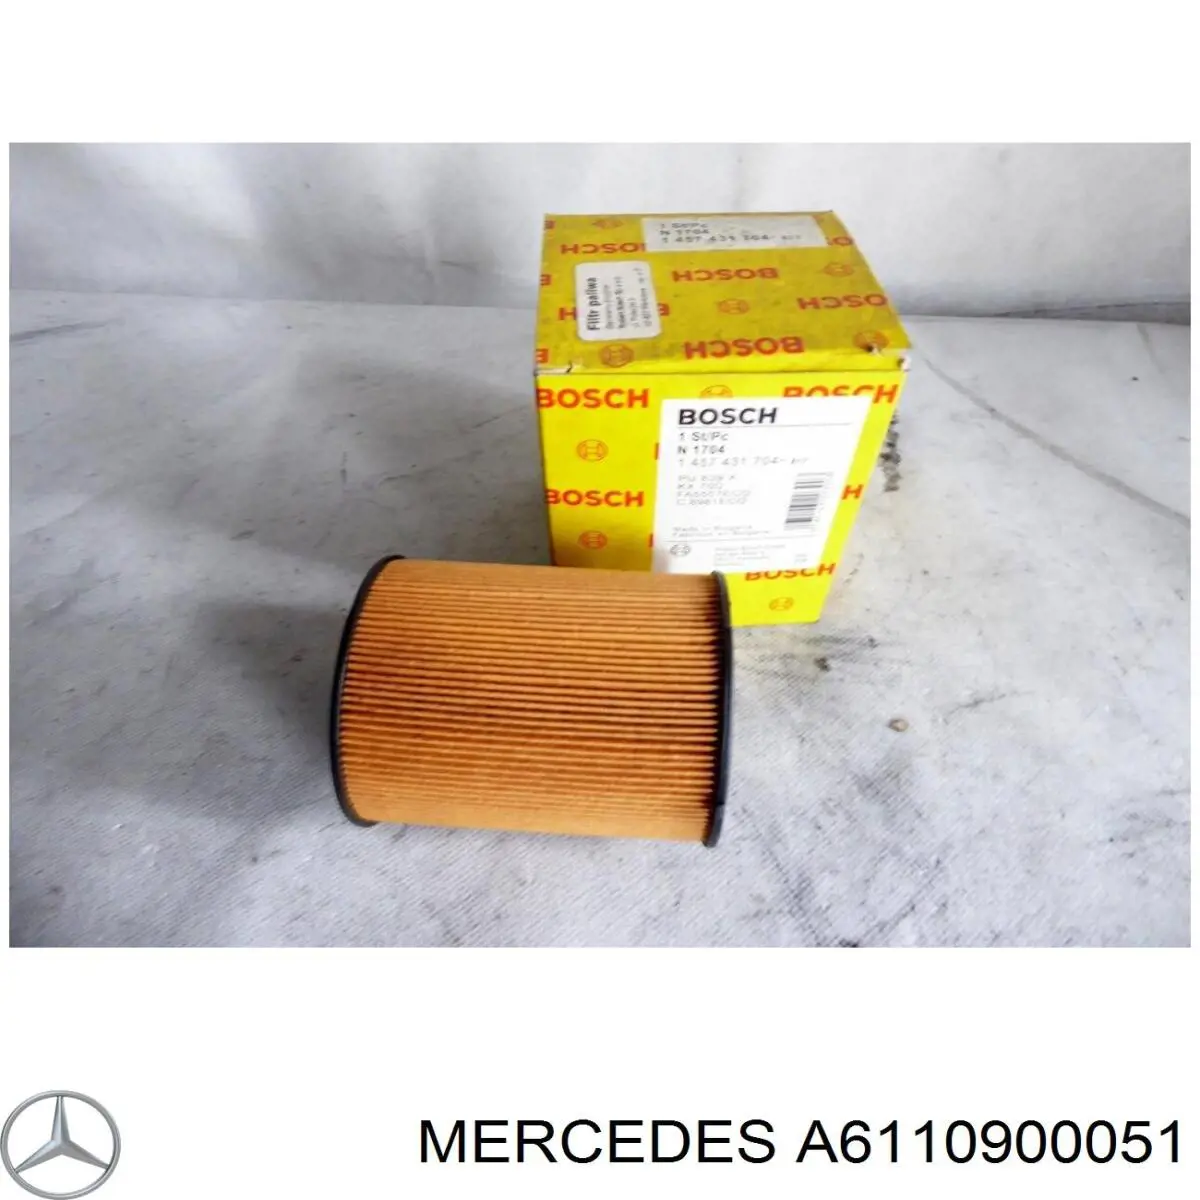 A6110900051 Mercedes filtro combustible